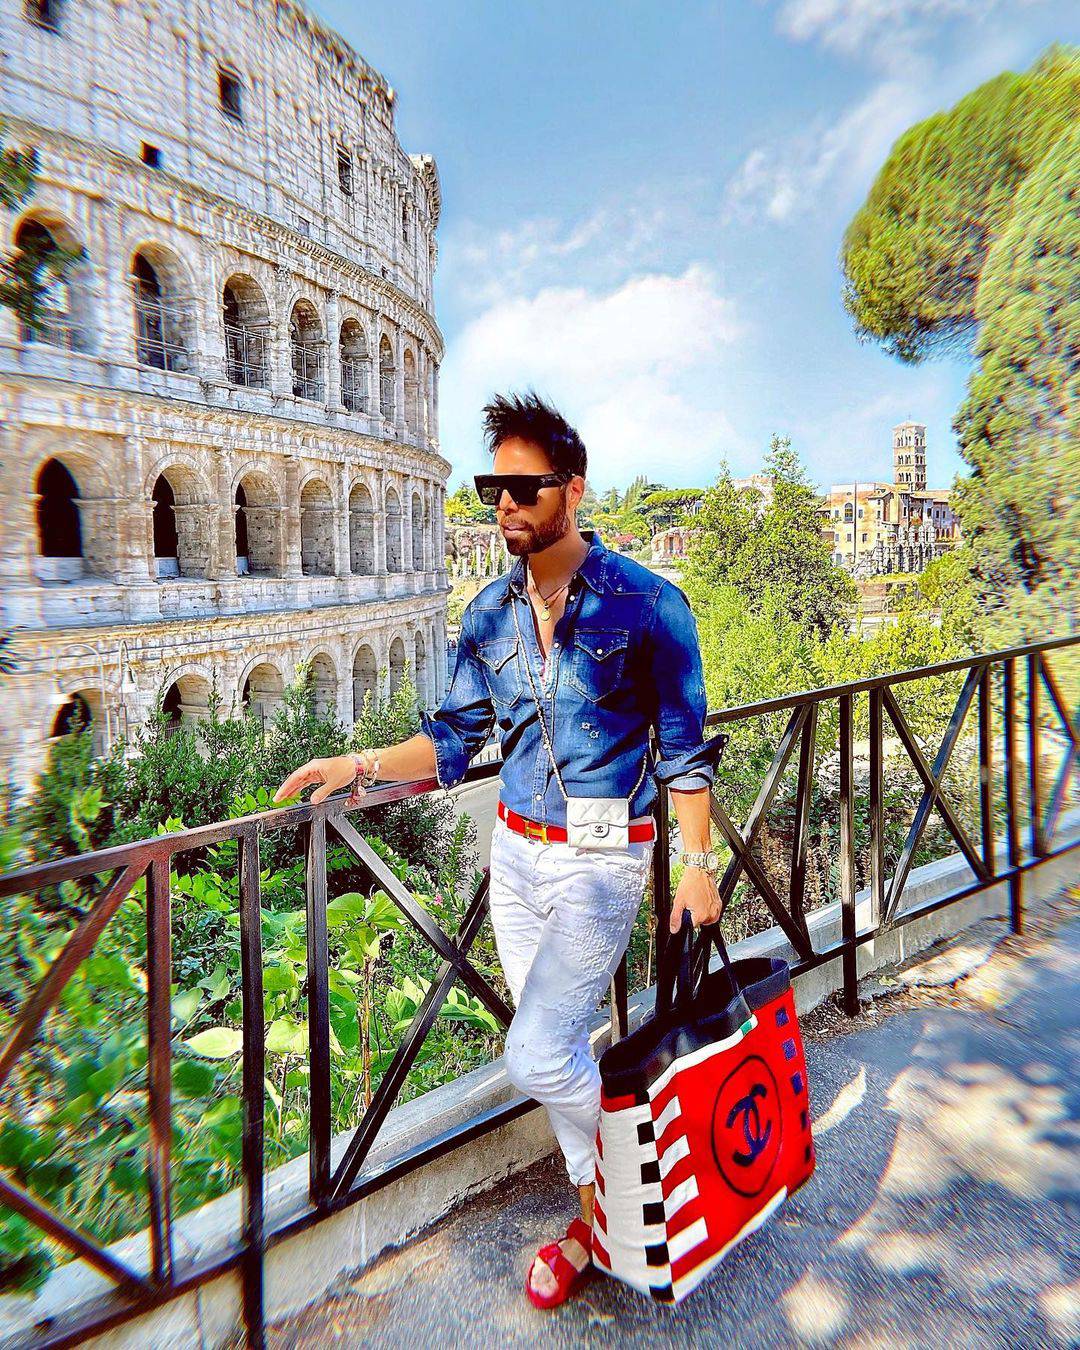 Grubnića razočarao Chanelov dućan u Rimu: 'Ogrebala mi se torbica, a oni nisu htjeli pomoći'